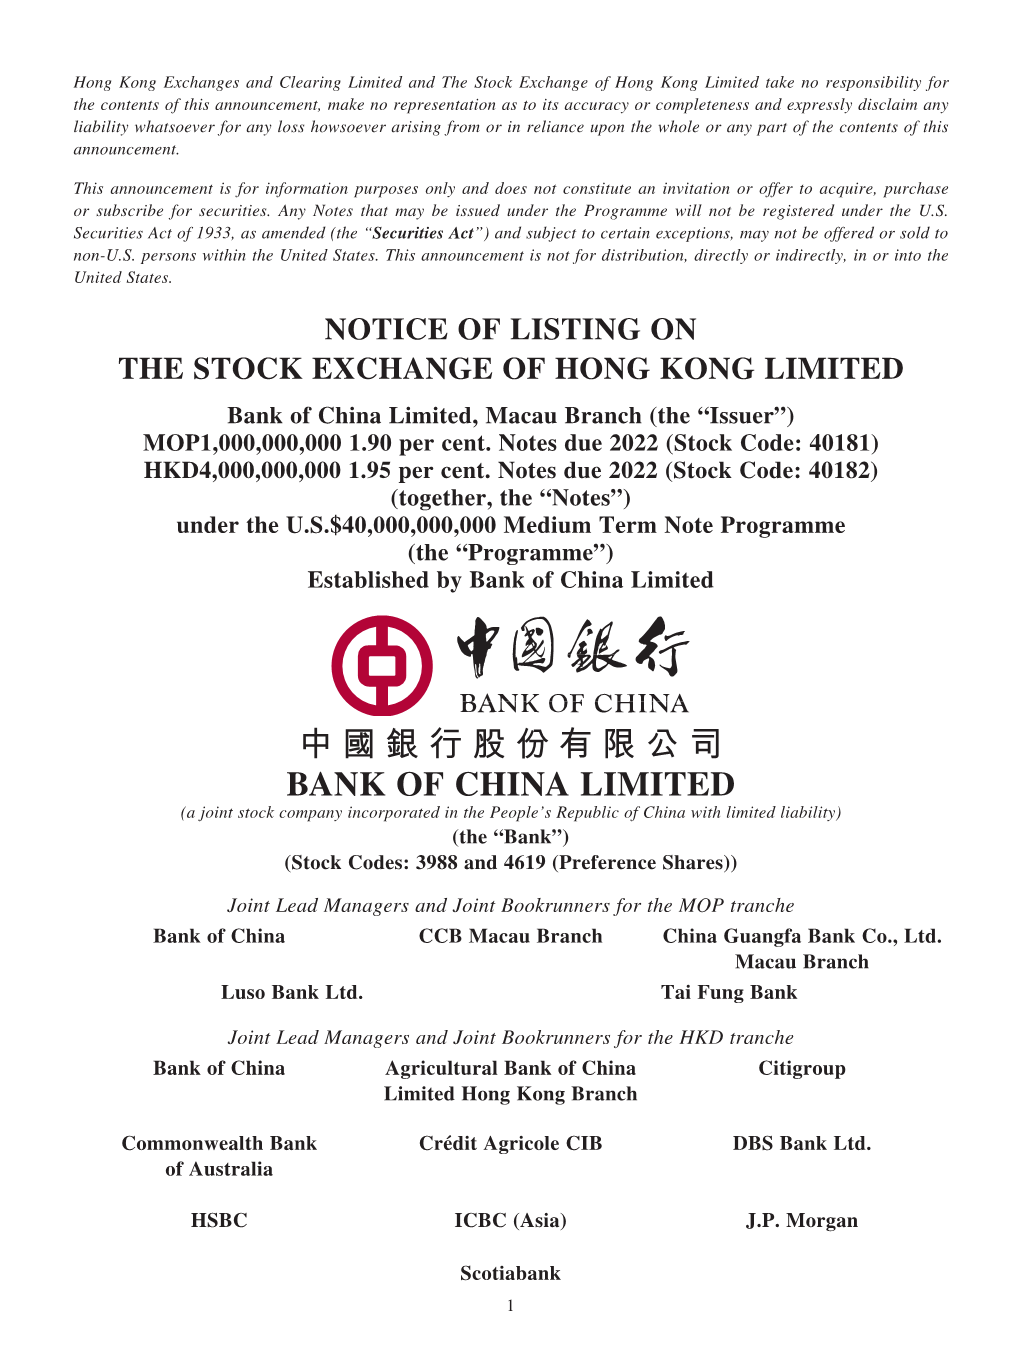 中國銀行股份有限公司 Bank of China Limited